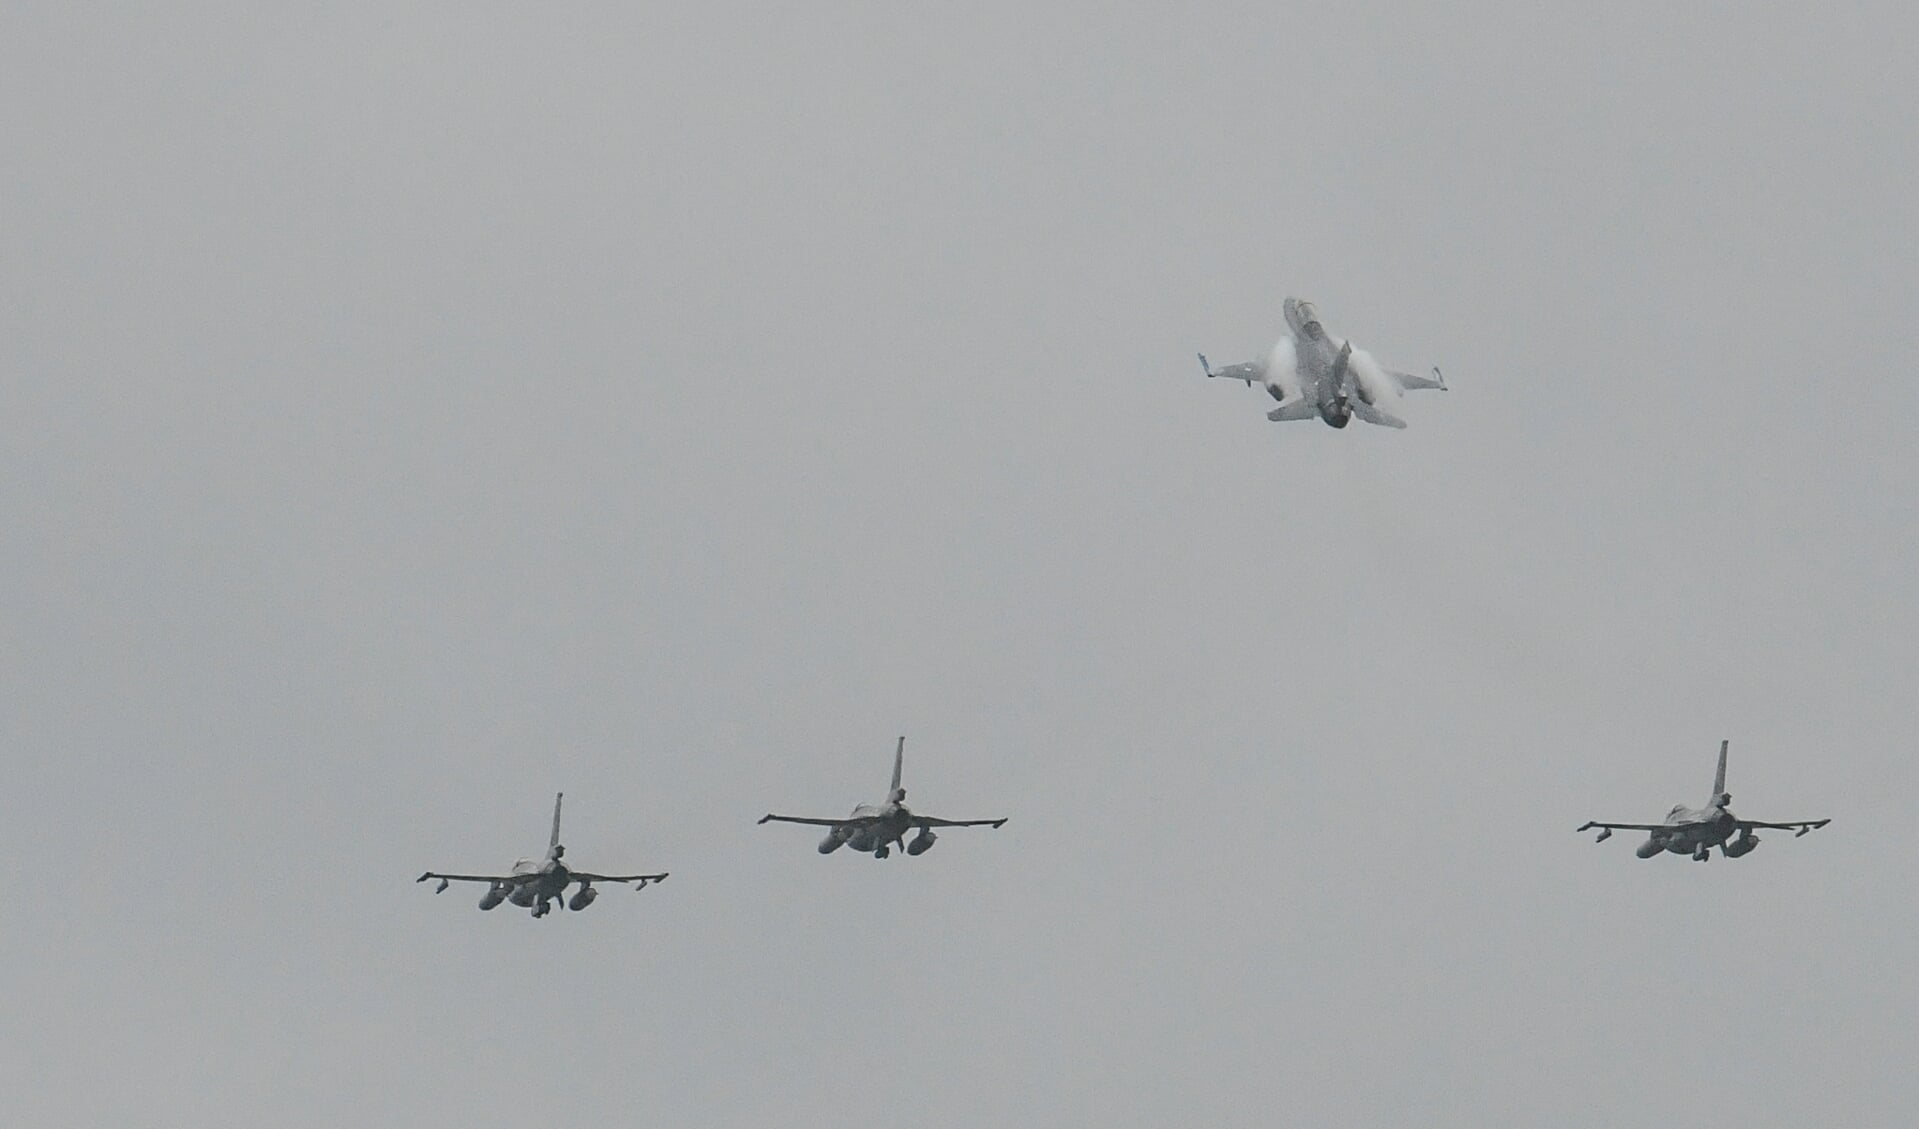 De fly-by is elk jaar onderdeel van de herdenkingsplechtigheid van de Koninklijke Luchtmacht.